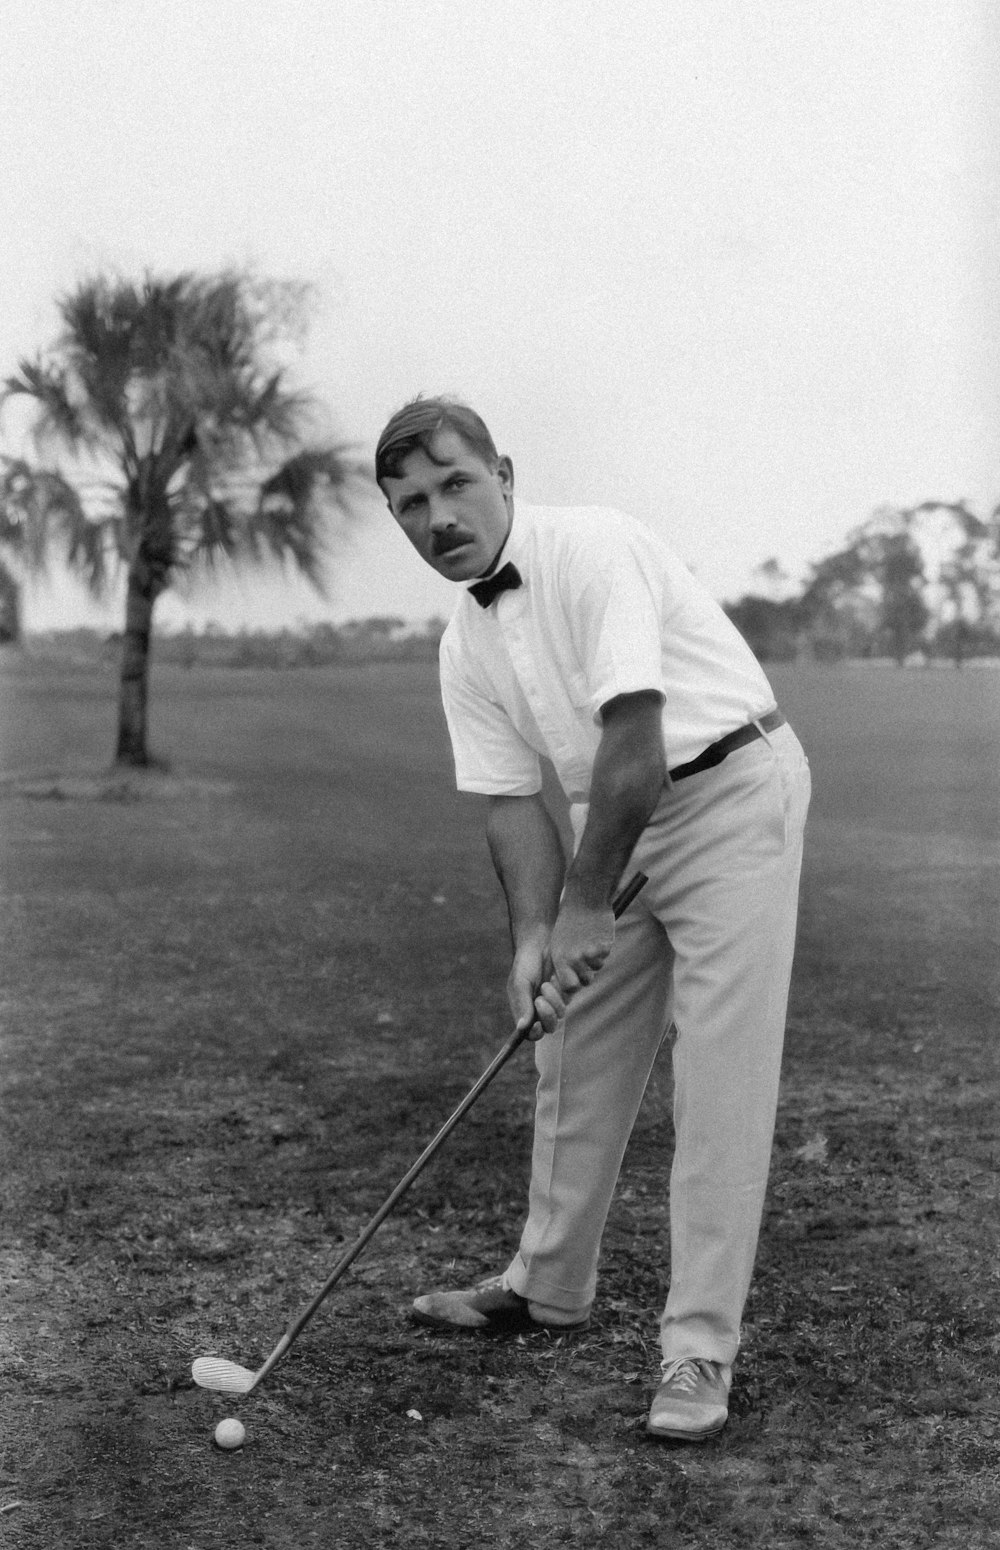 ゴルフをしている男性の白黒写真